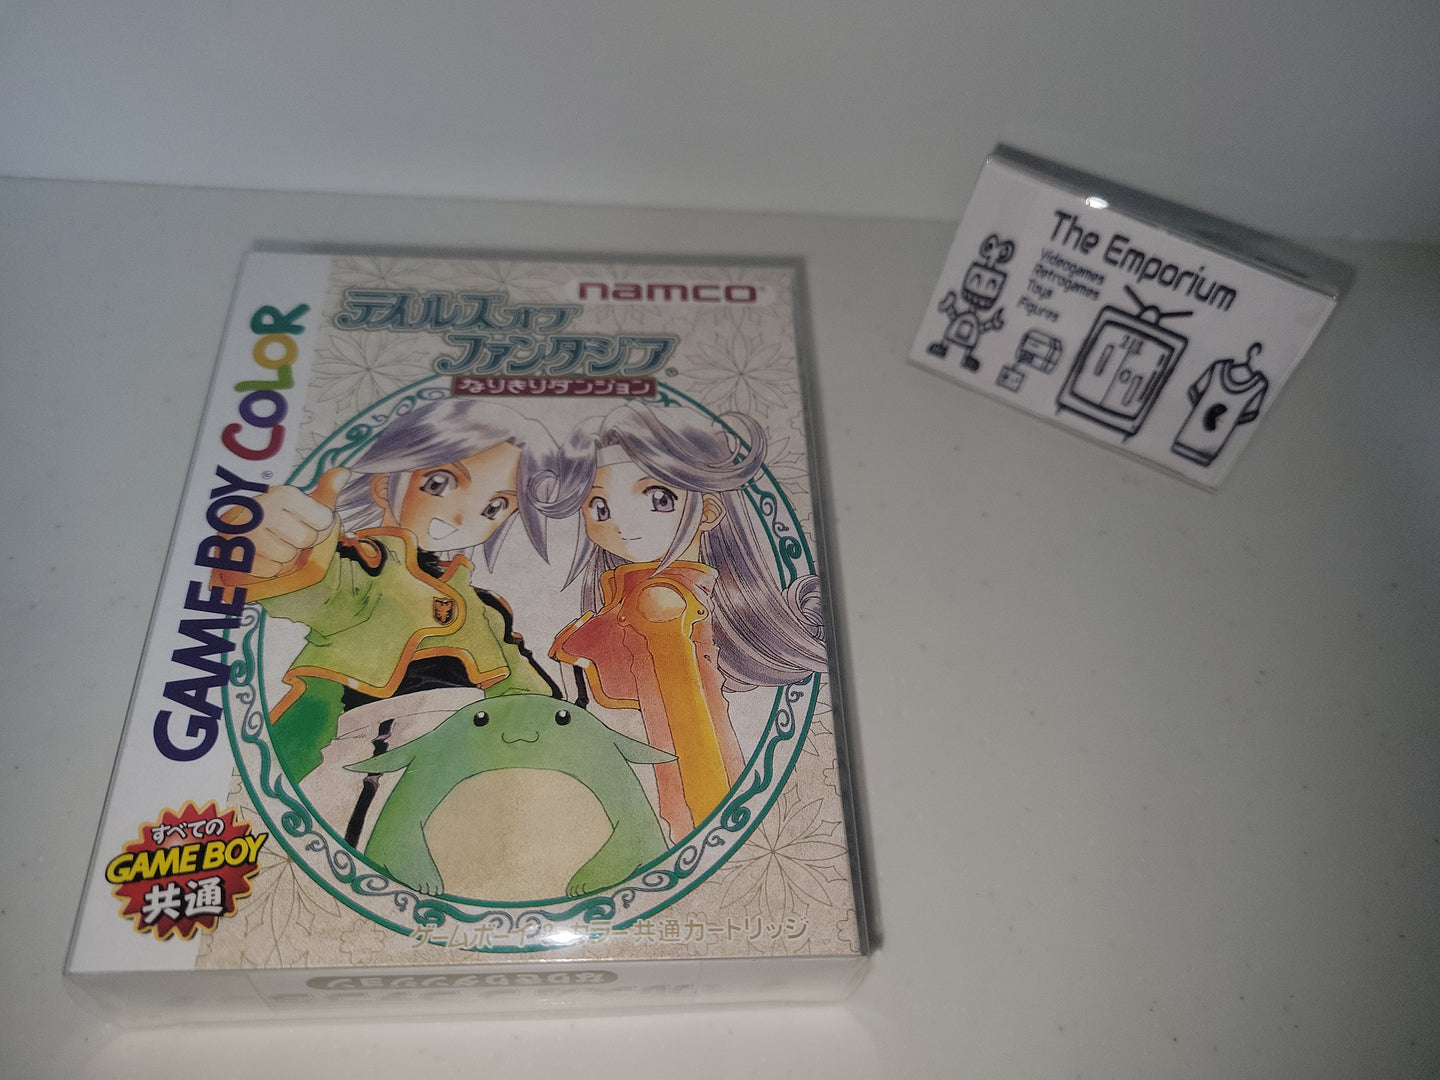 Tales of Phantasia: Narikiri Dungeon - Nintendo GB GameBoy